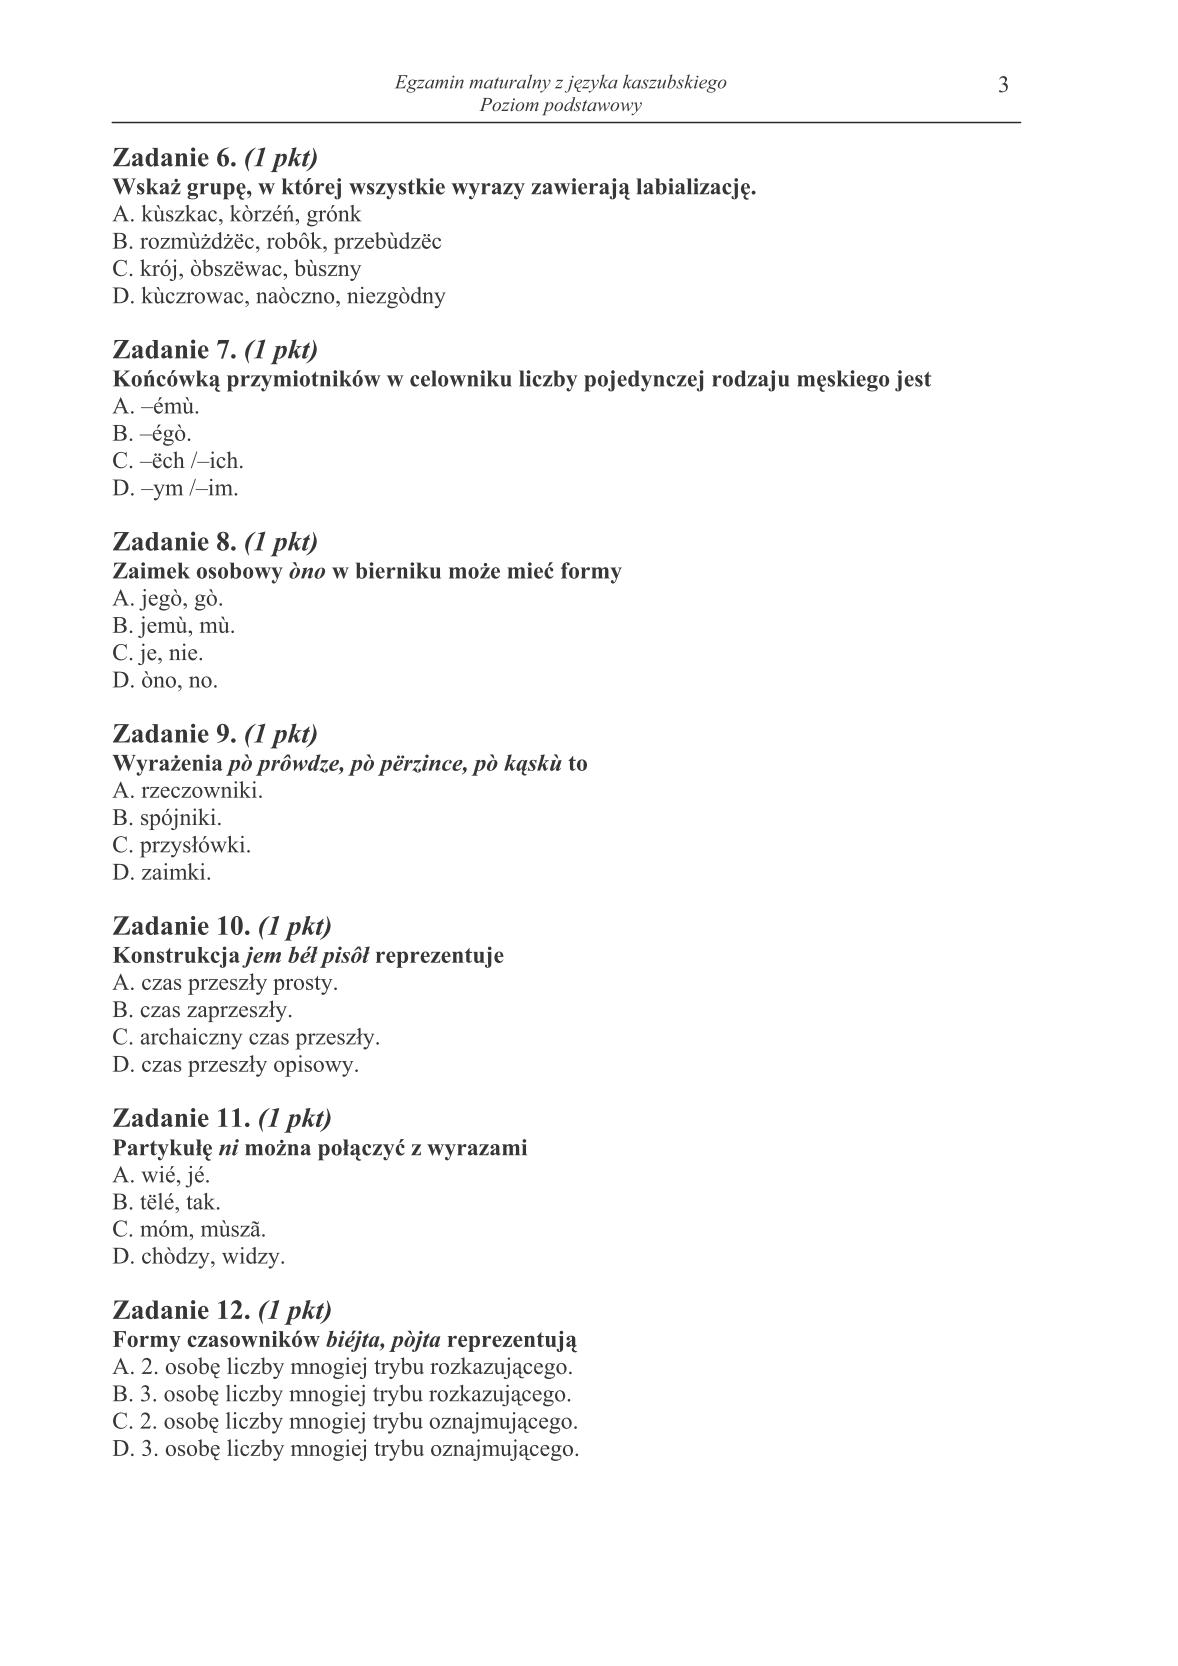 pytania-jezyk-kaszubski-poziom-podstawowy-matura-2014-str.3